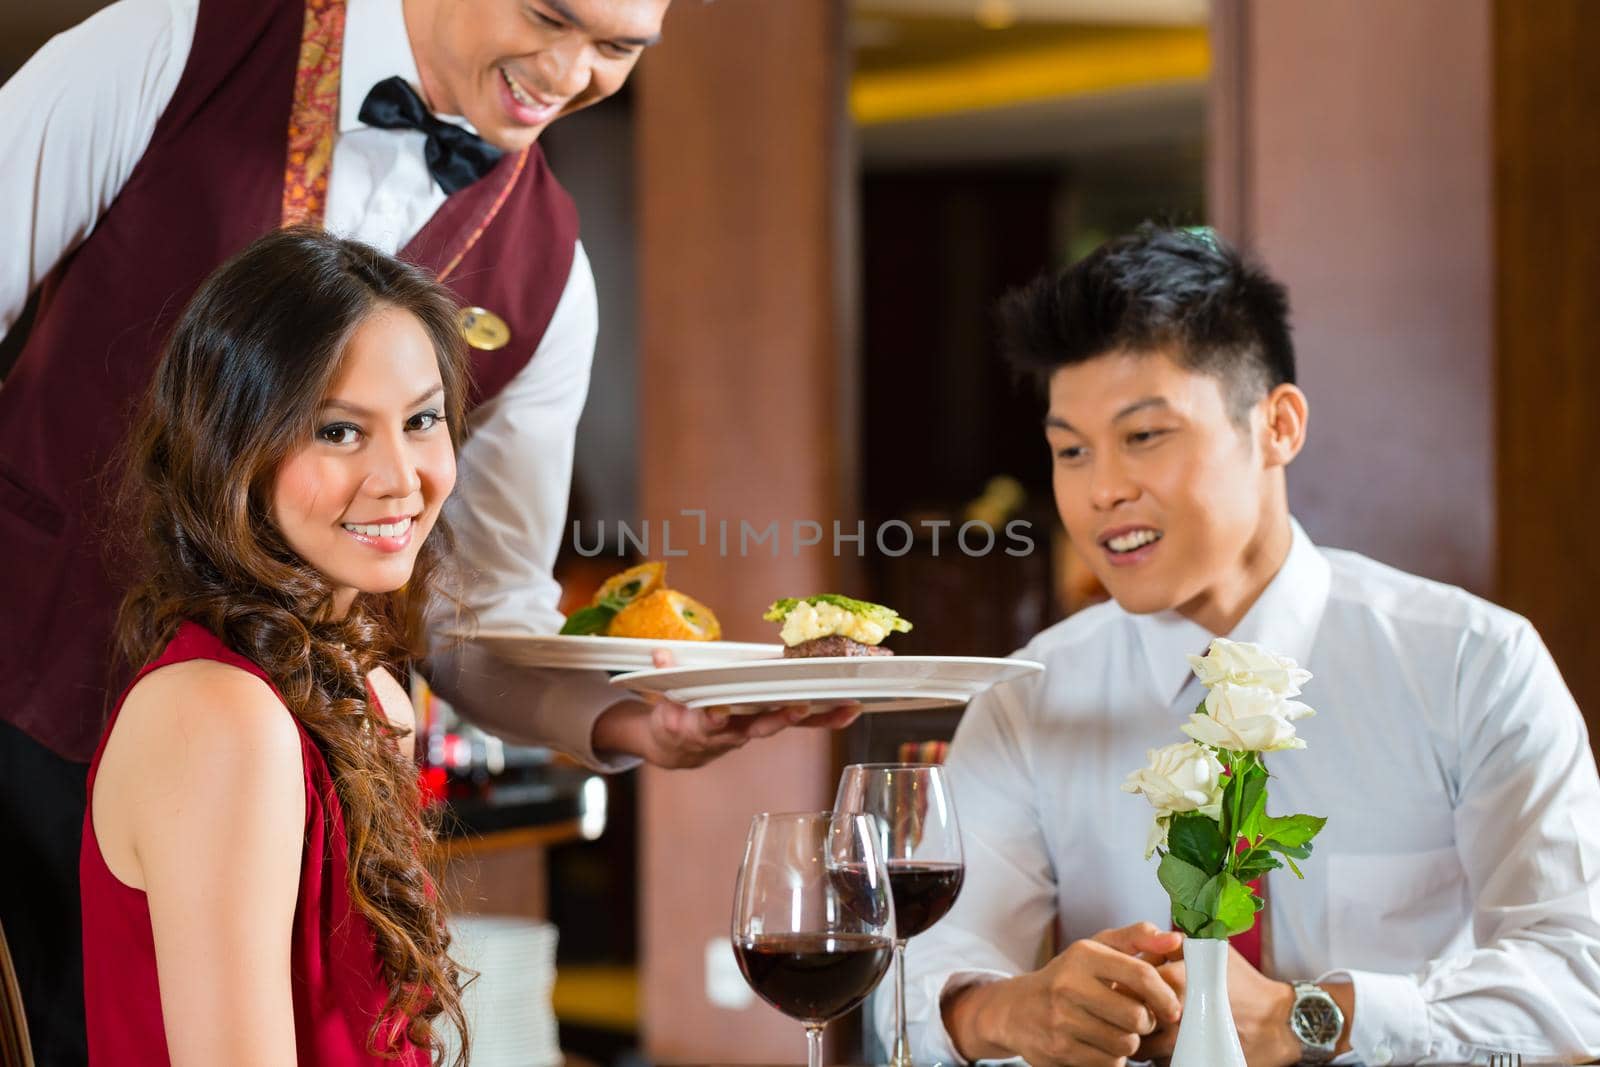 Chinese waiter serving dinner in elegant restaurant or Hotel by Kzenon